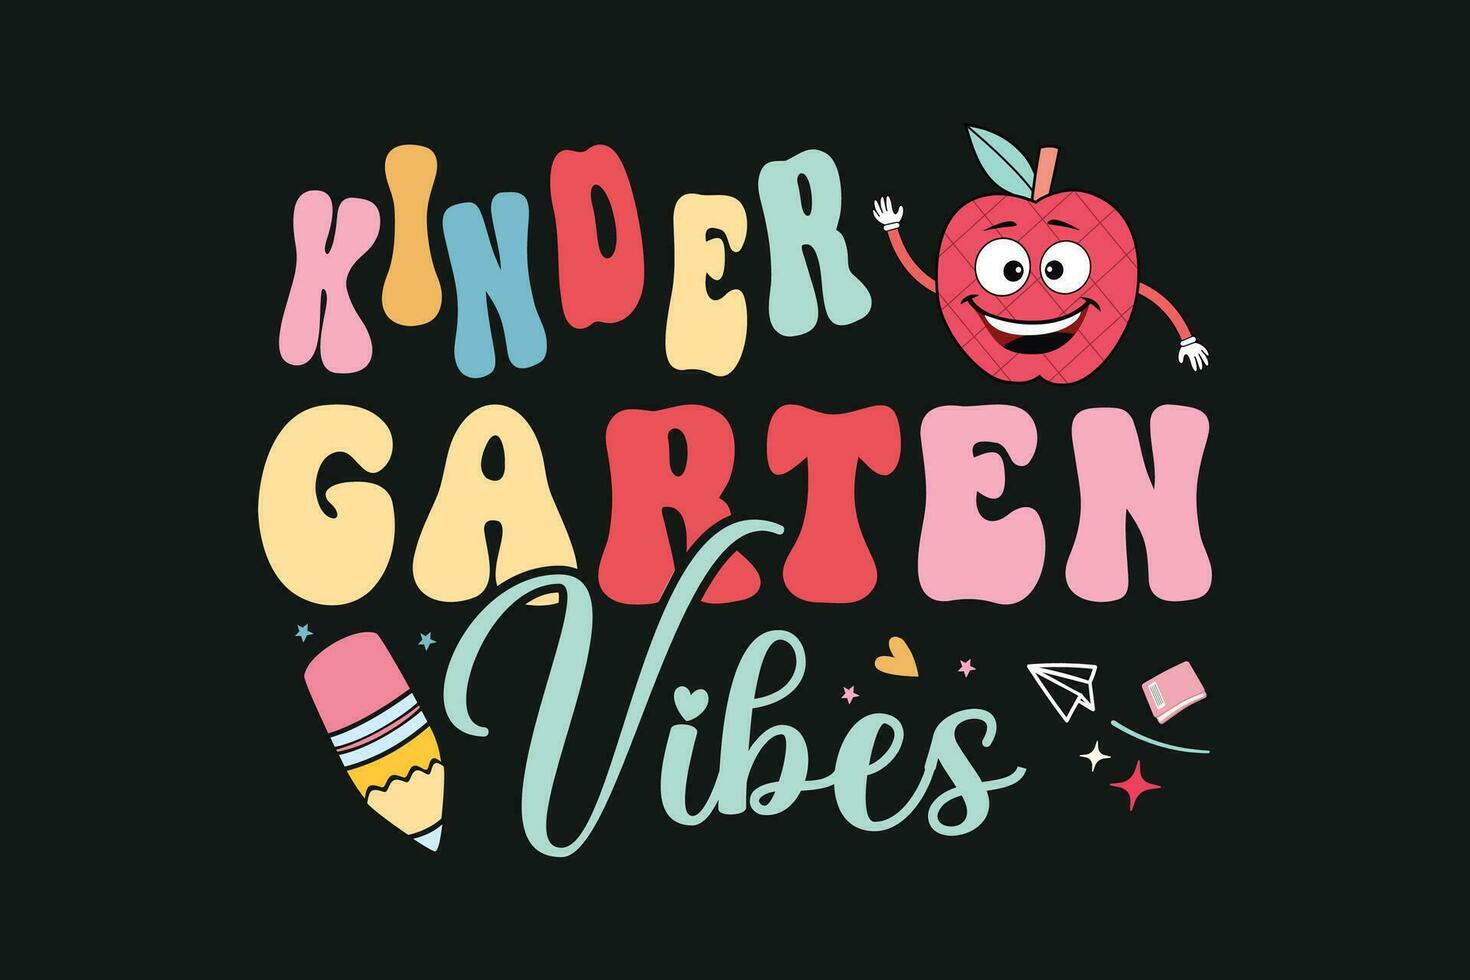 Kindergarten vibes kids vector tshirt